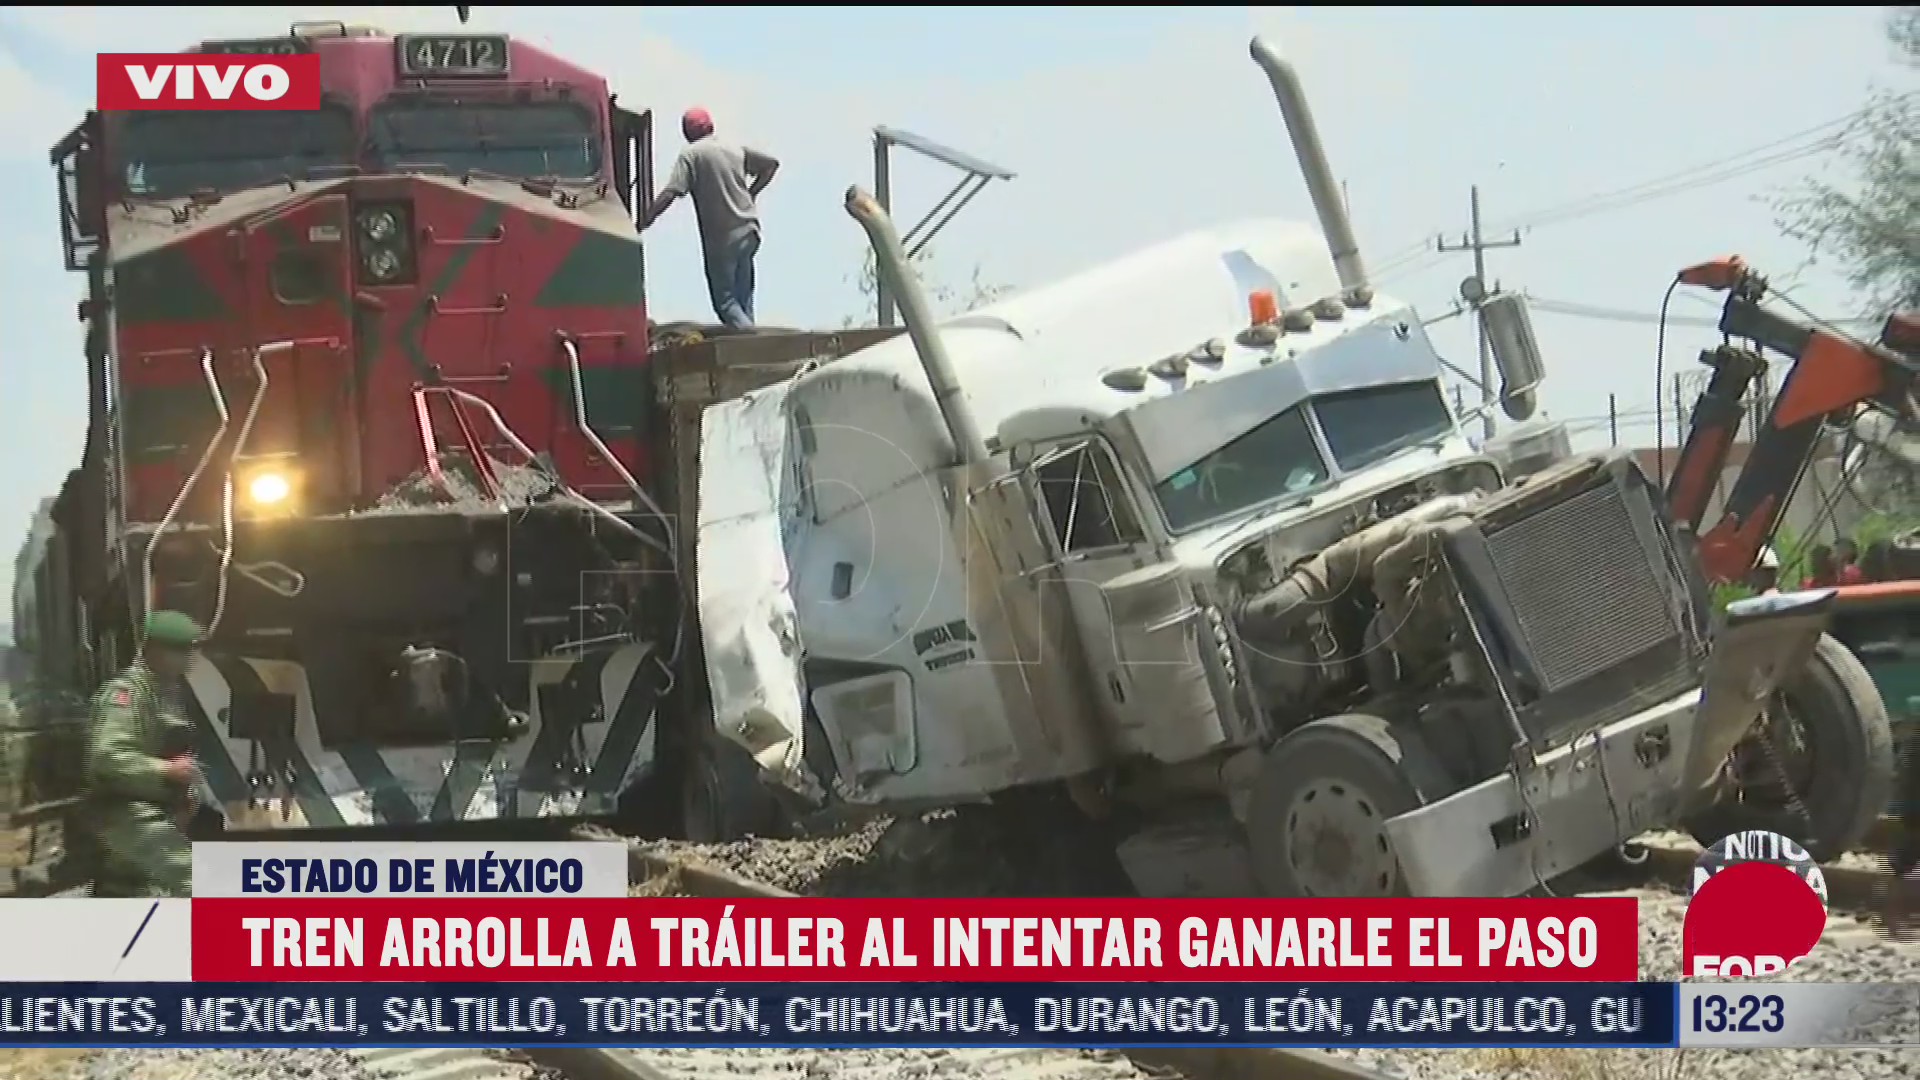 tren arrolla trailer al intentar ganarle el paso en nextlalpan estado de mexico